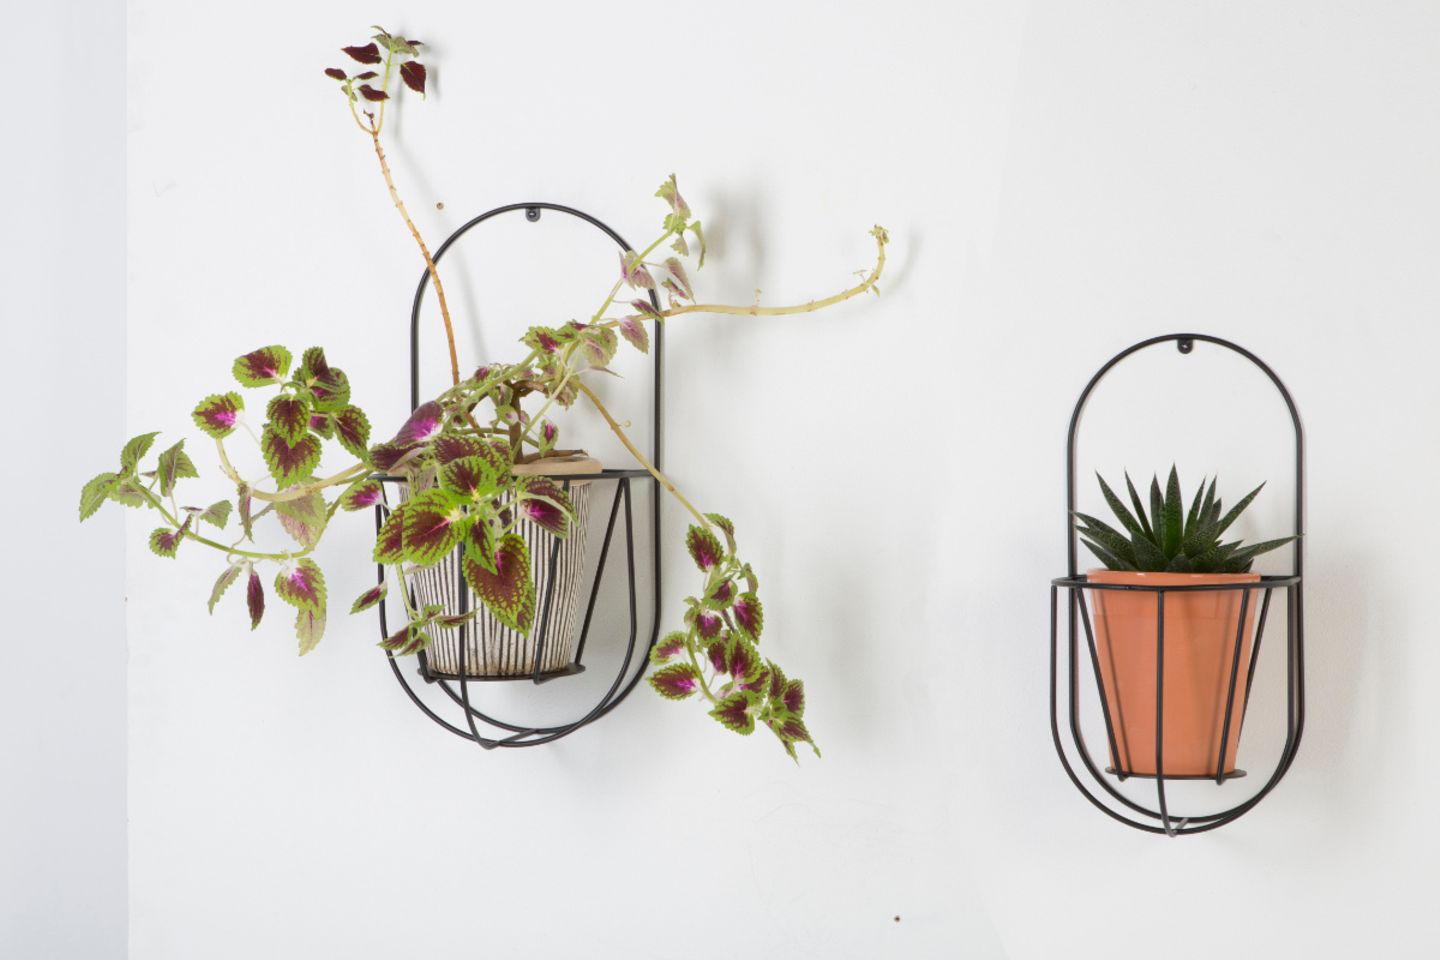 Pflanzenwandhalter "Cibele" mit dekorativen Pflanzen an einer weißen Wand